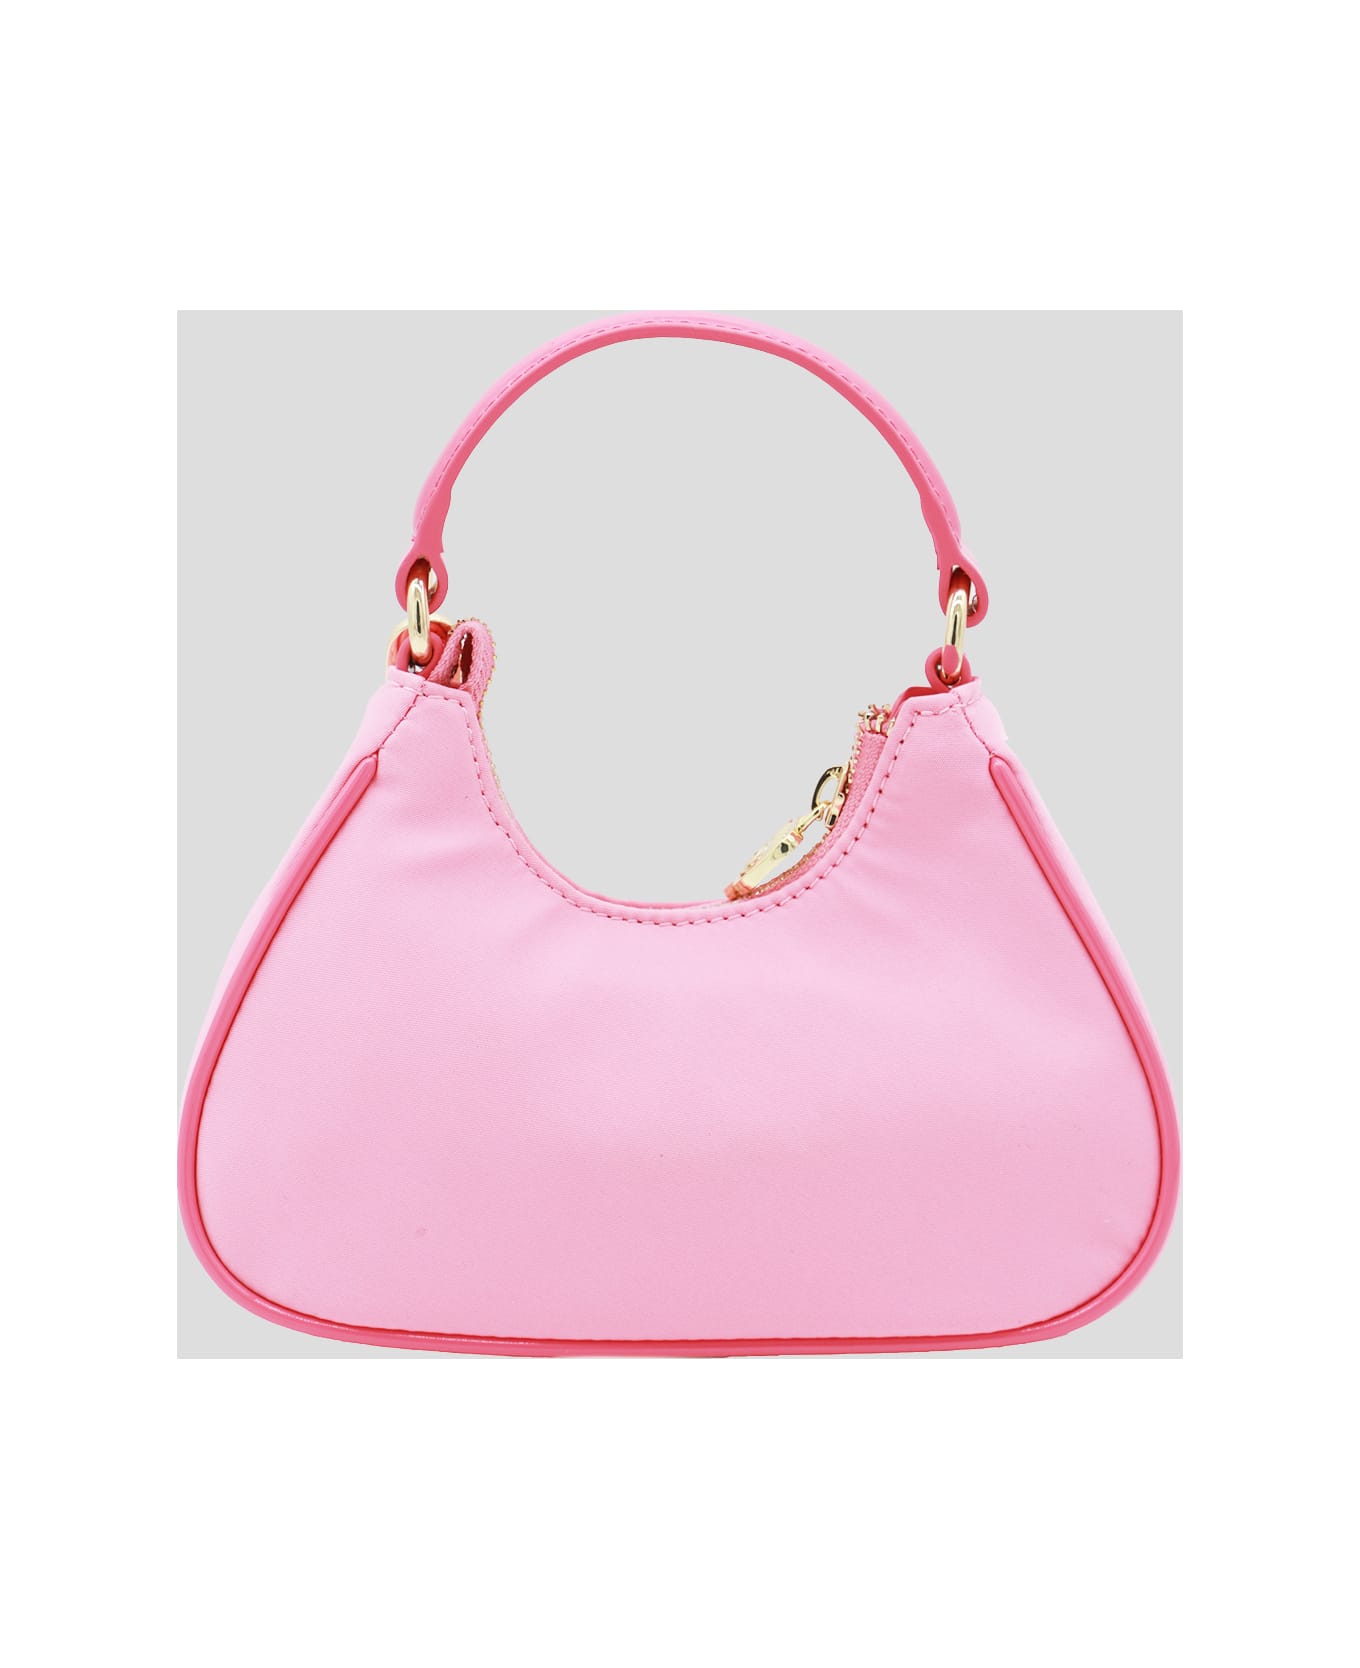 Chiara Ferragni Pink Top Handle Bag - SACHET PINK